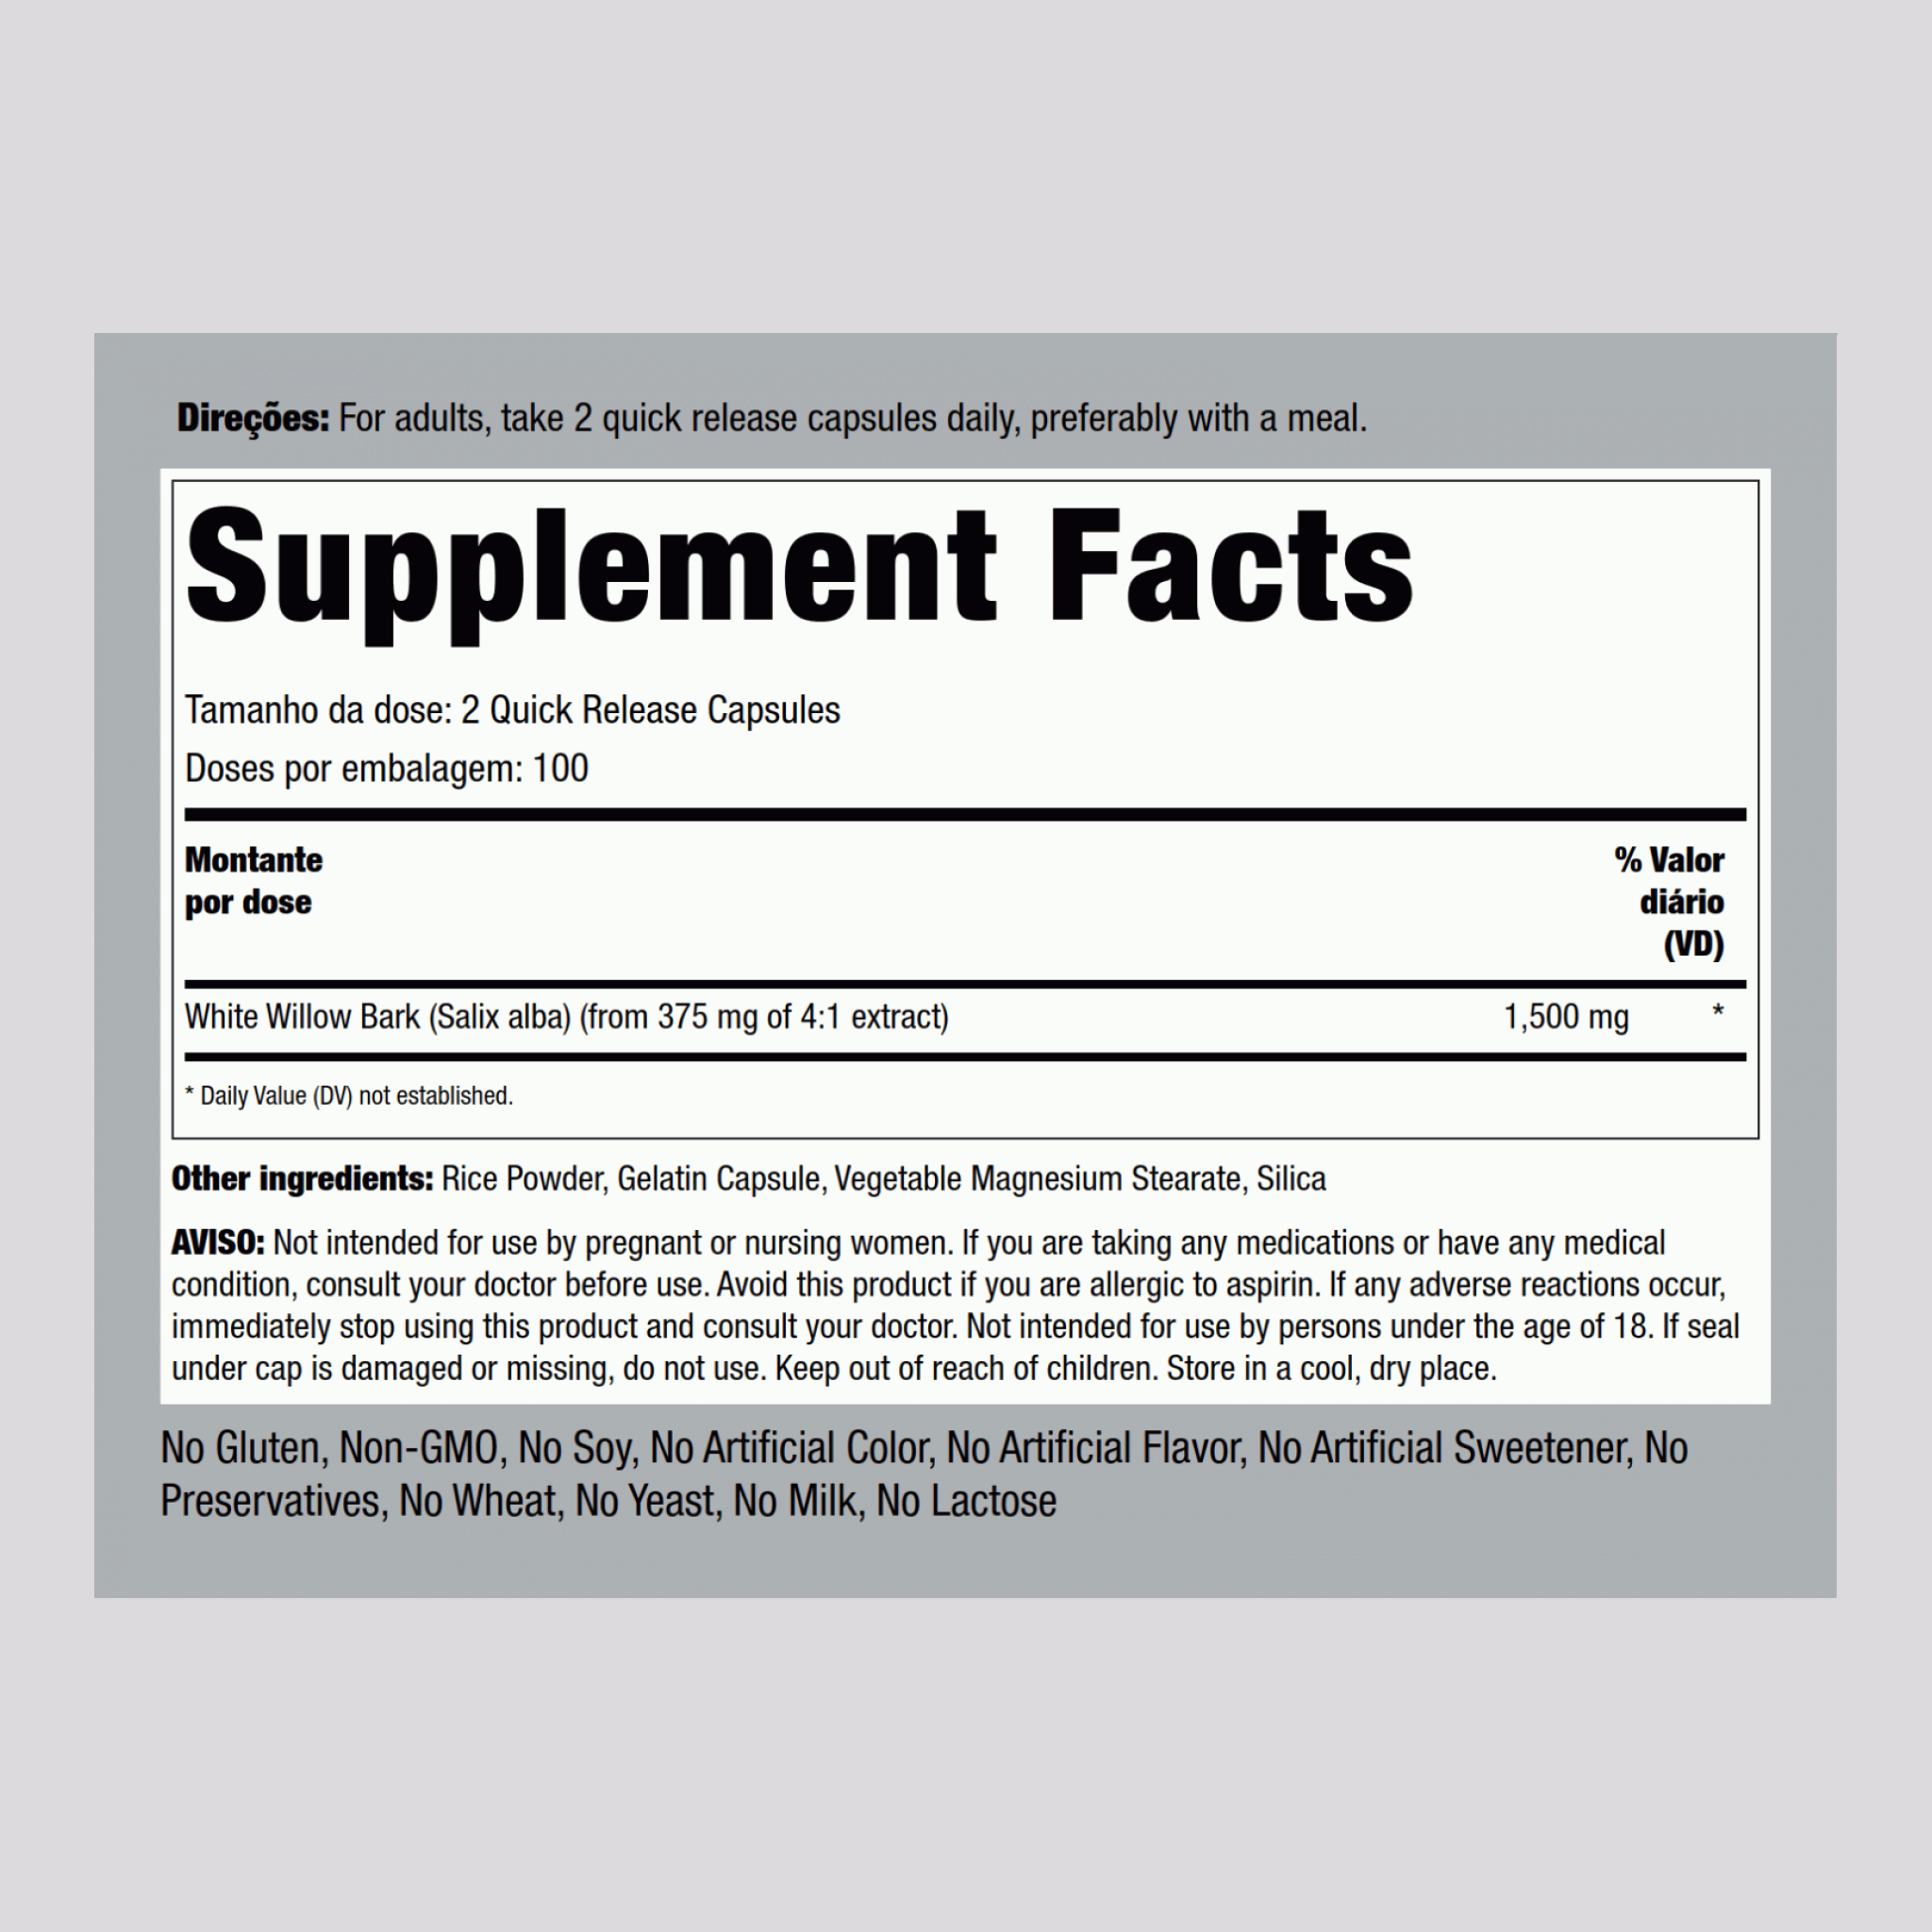 Casca de salgueiro-branco 1500 mg (por dose) 200 Cápsulas de Rápida Absorção     